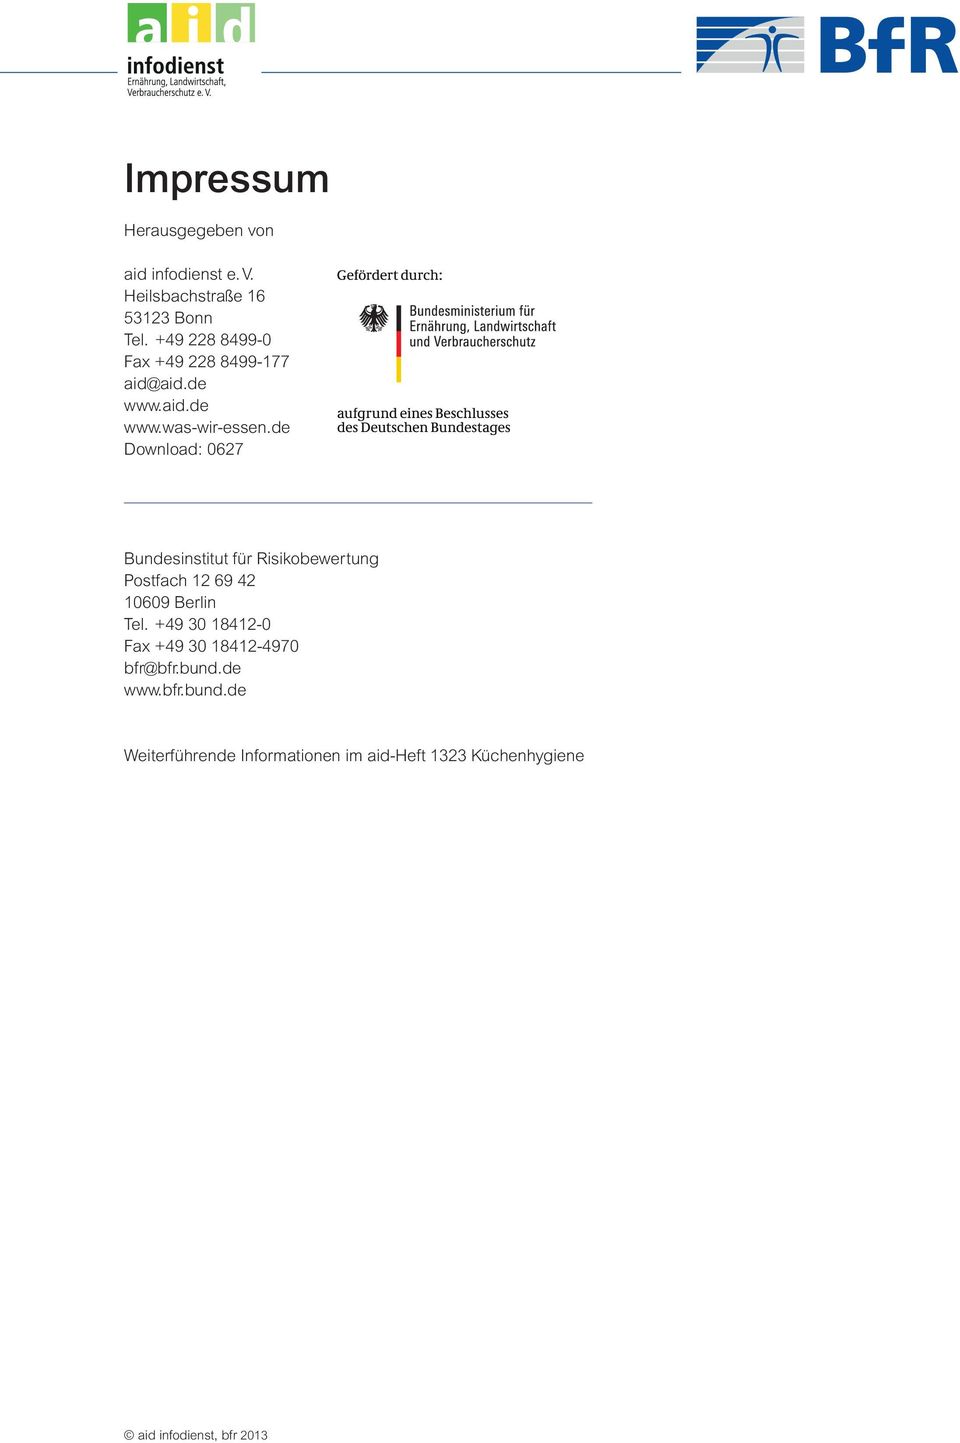 de Download: 0627 Bundesinstitut für Risikobewertung Postfach 12 69 42 10609 Berlin Tel.